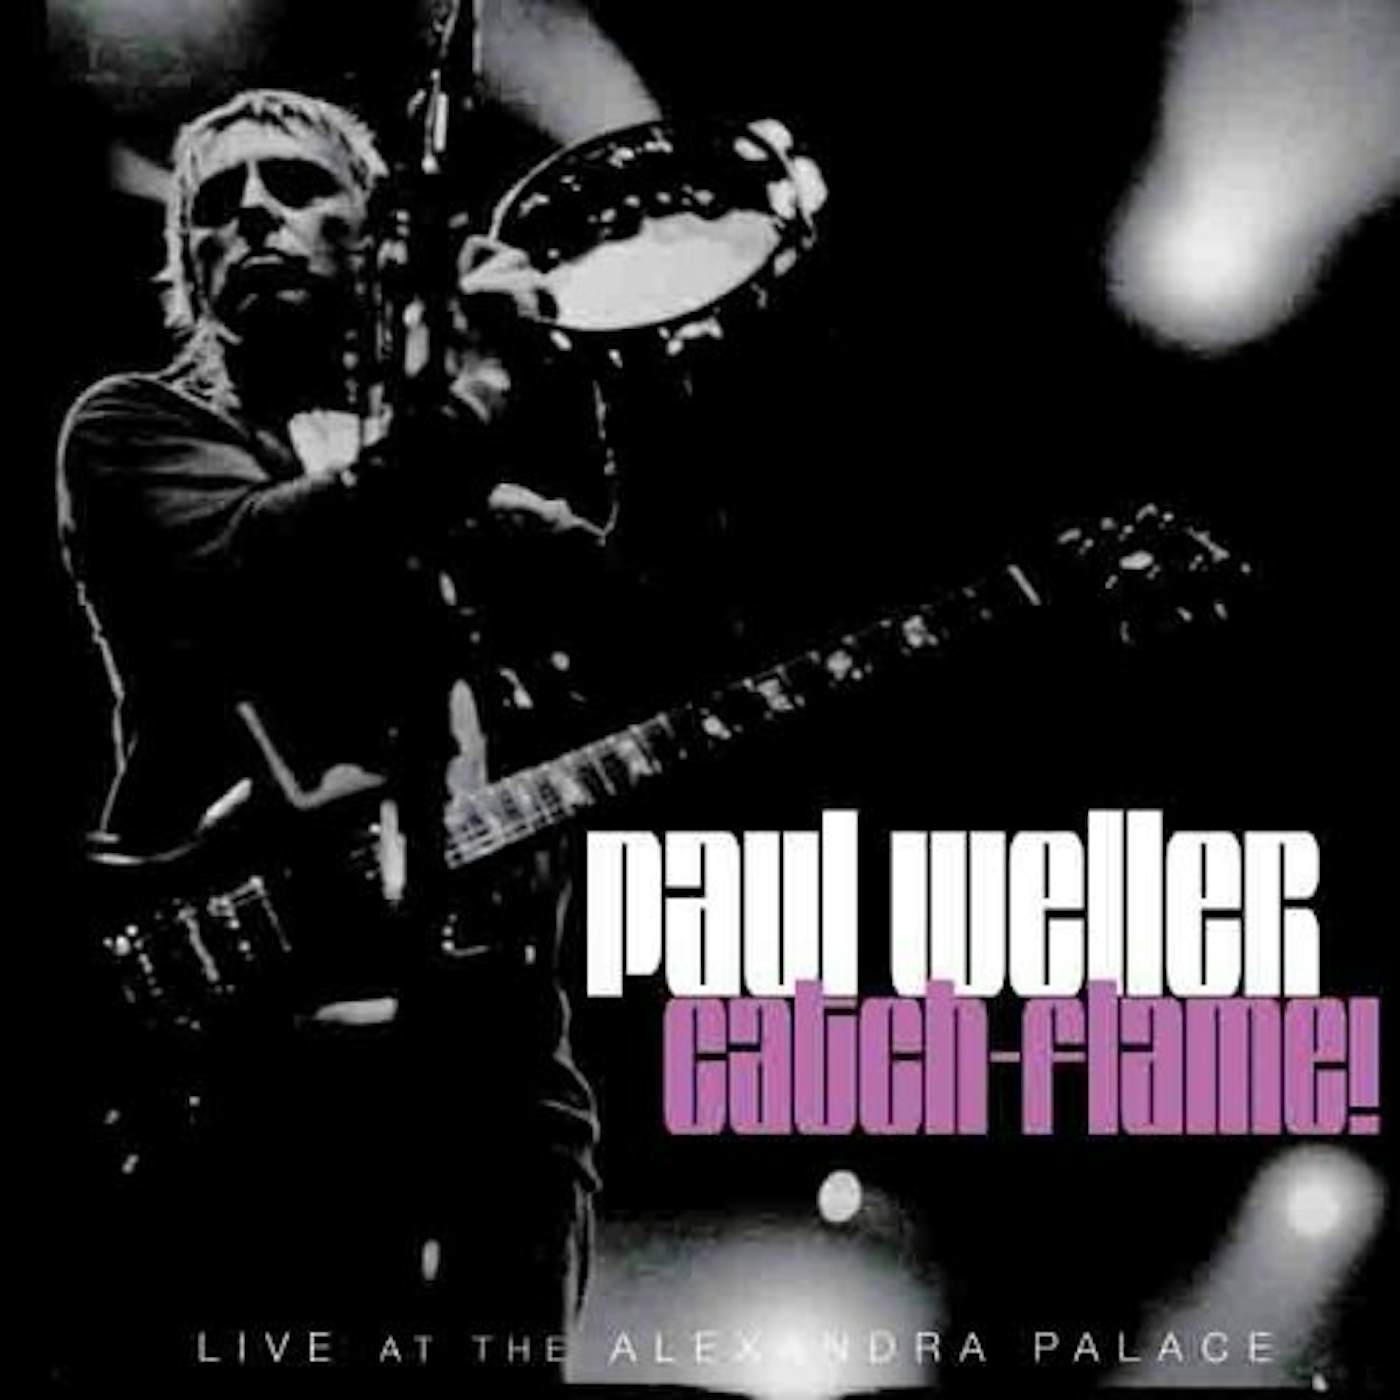 Paul Weller CATCH-FLAME CD